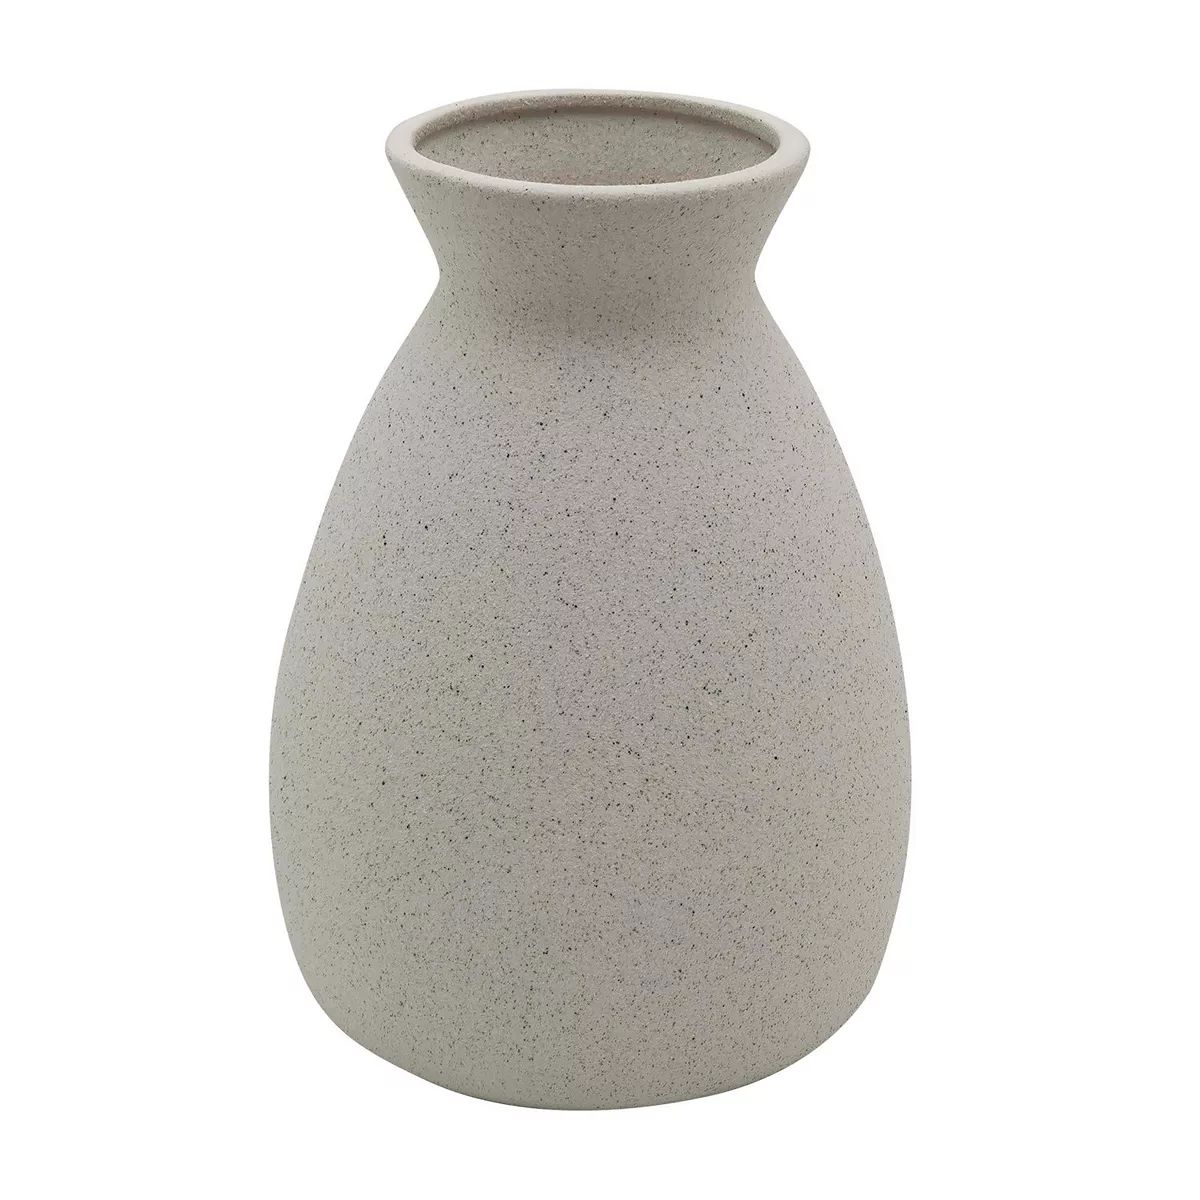 Sonoma Goods For Life® Neutral Speckled Vase Table Decor | Kohl's